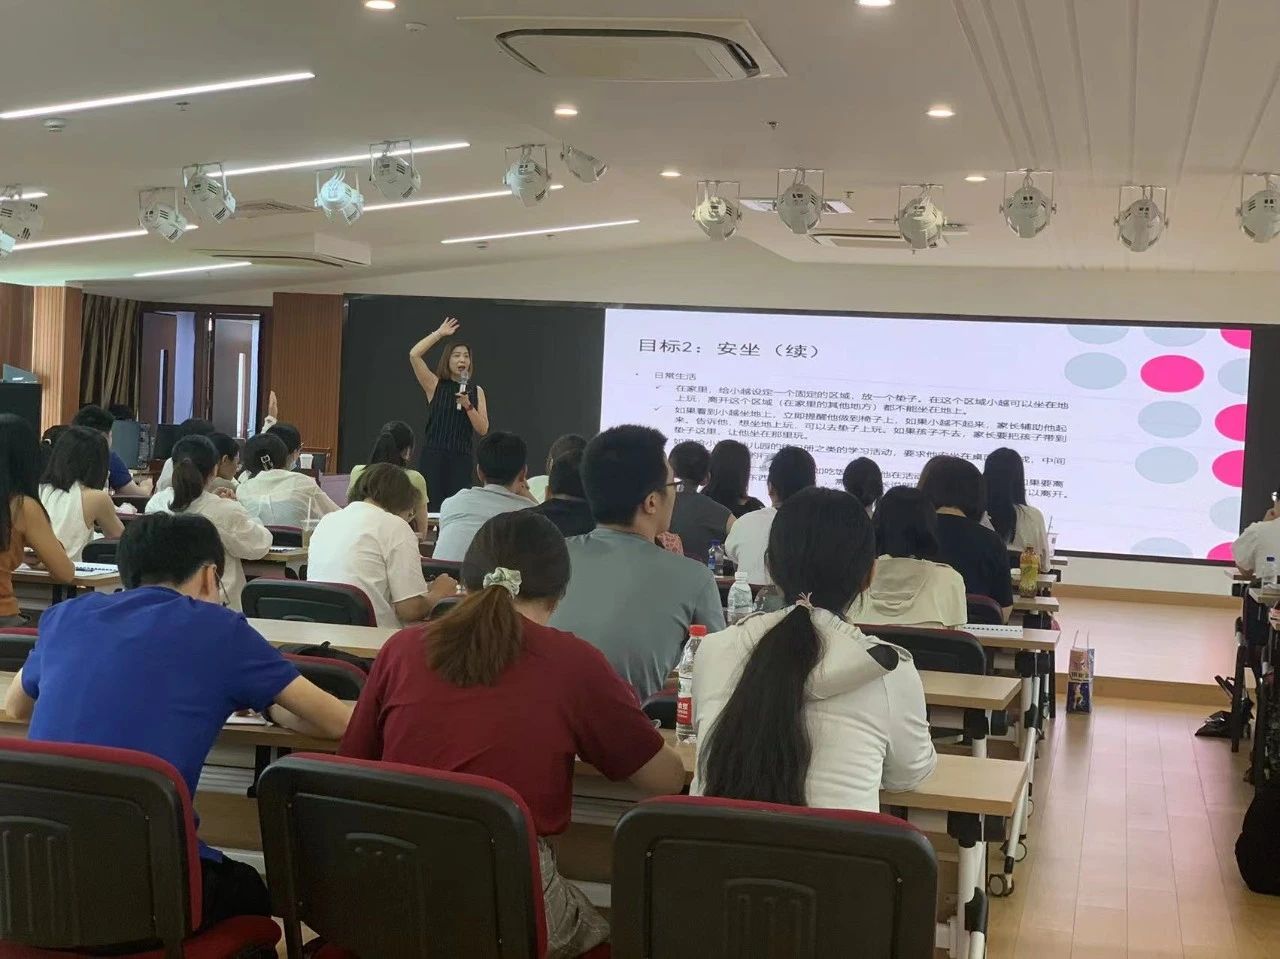 上海越量教育居家育儿的行为管理公益讲座